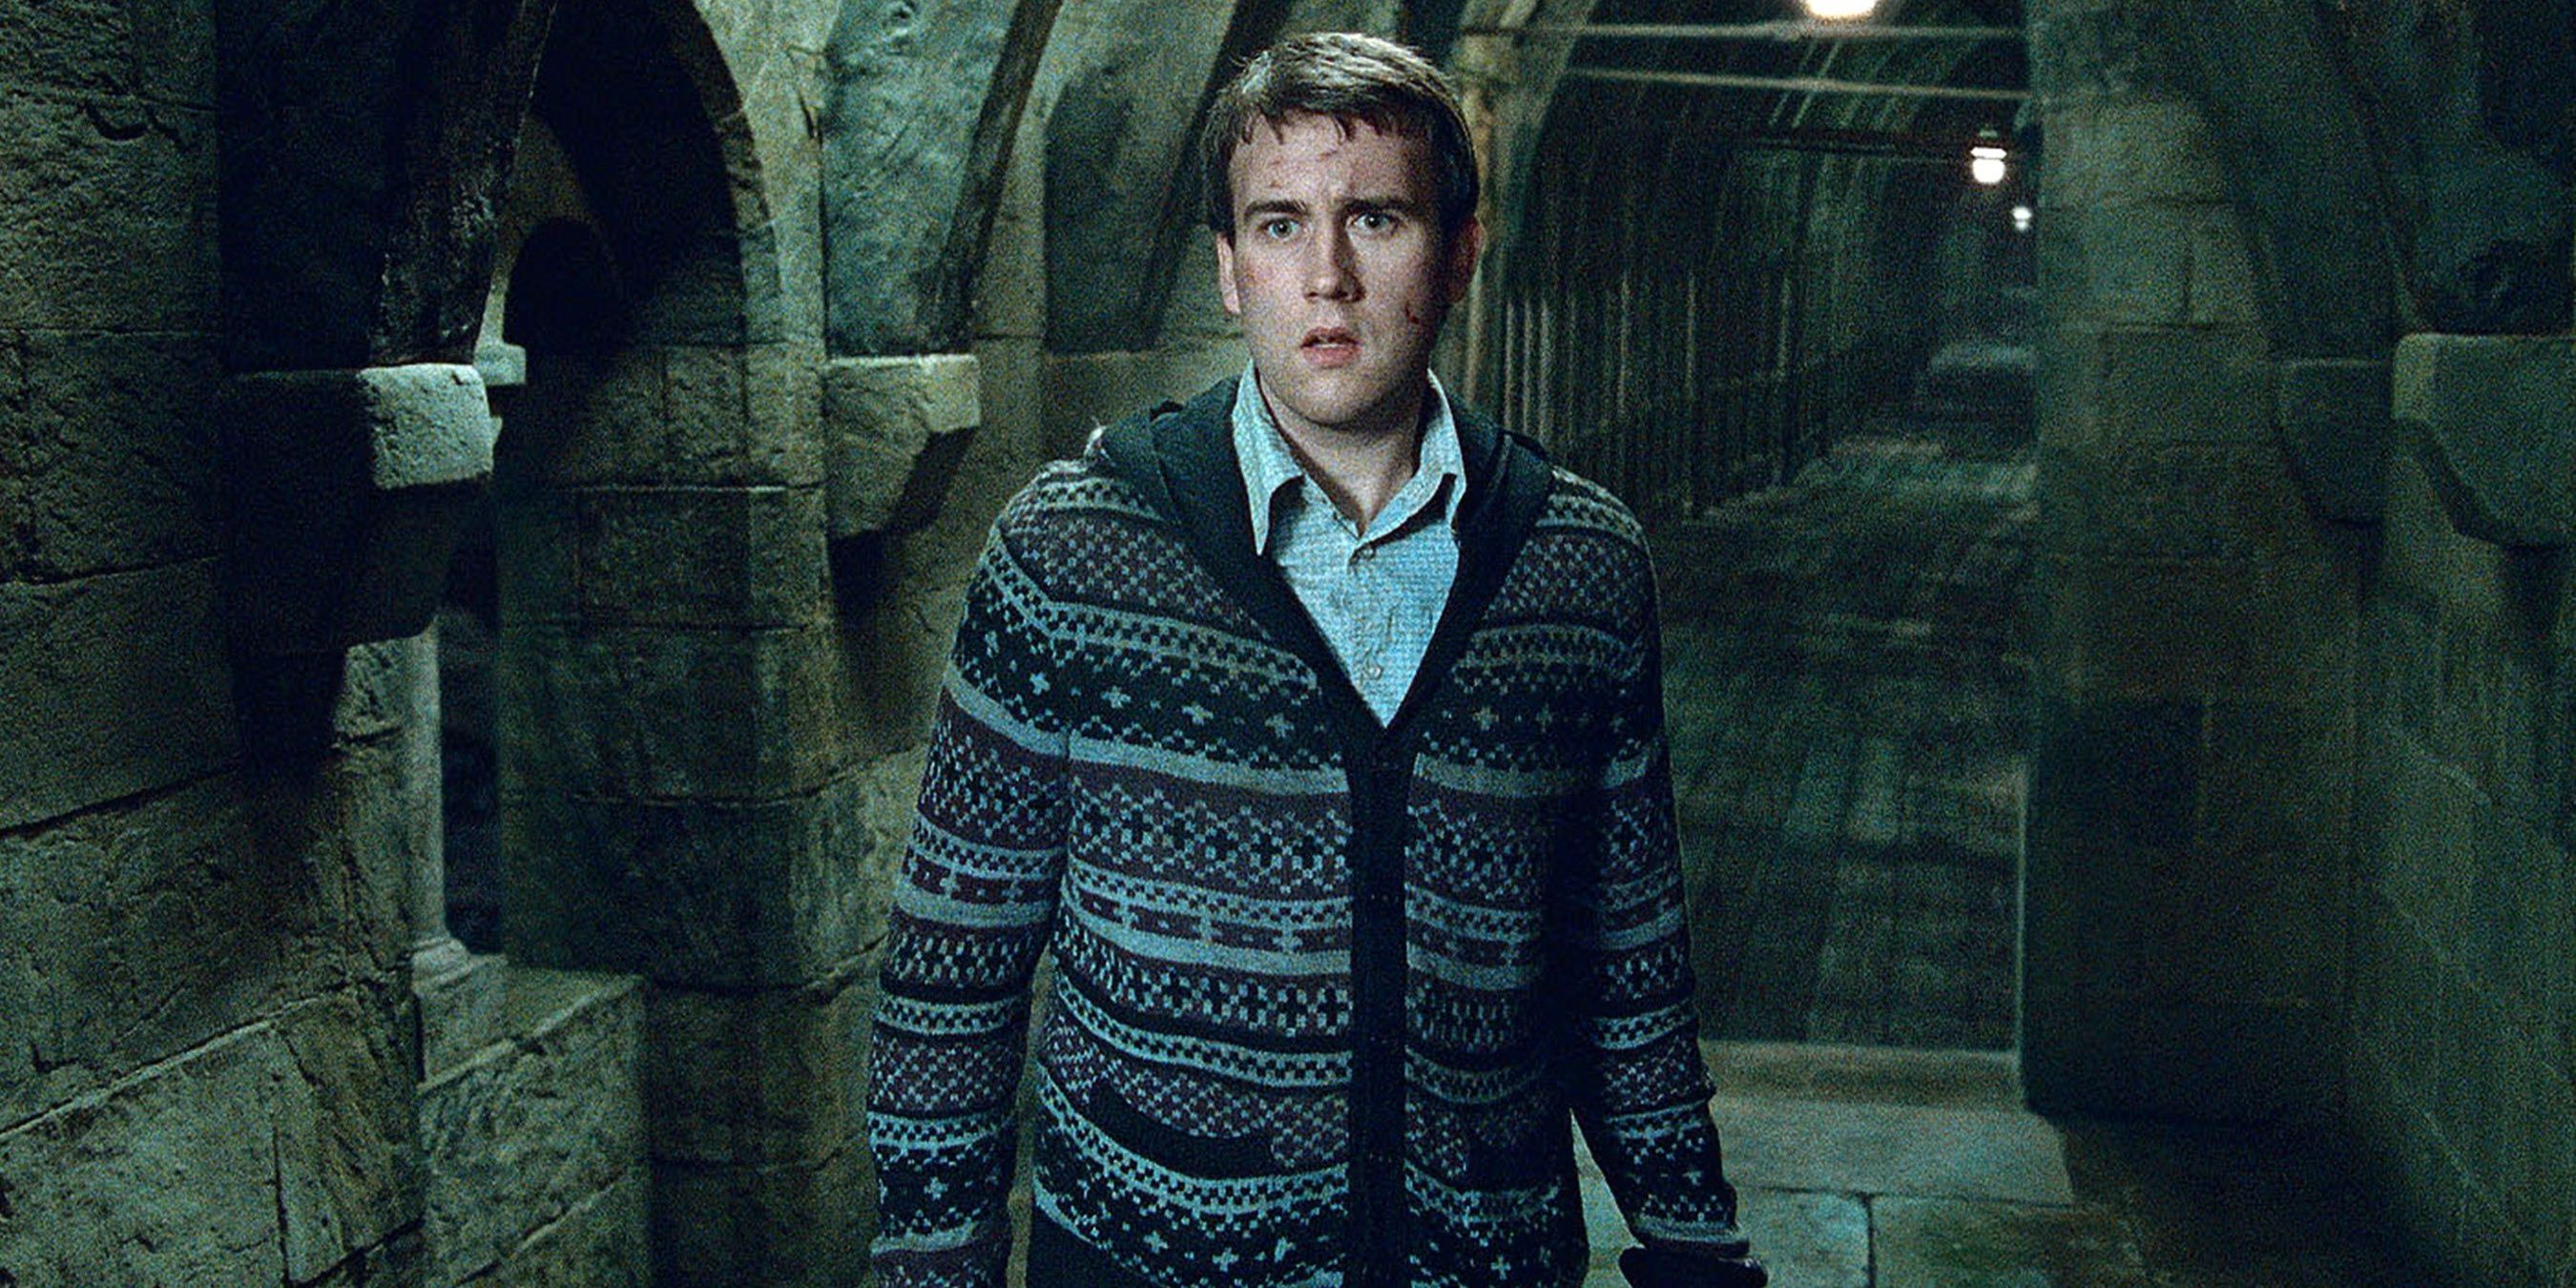 Neville parado na ponte em Harry Potter e as Relíquias da Morte